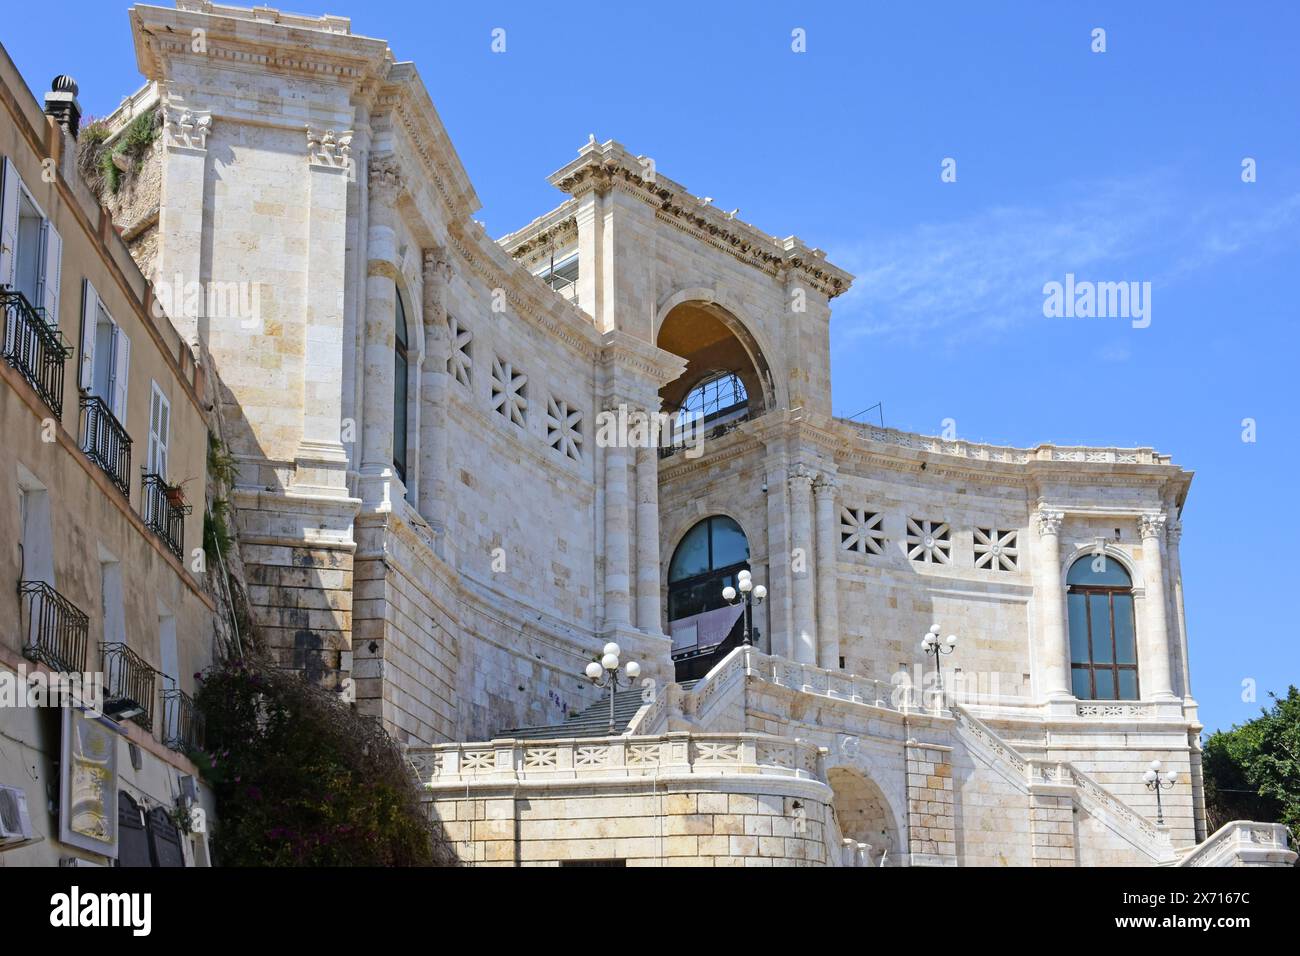 Bastione di San Remy, quartiere Castello, Cagliari, Sardegna, Italia Foto Stock